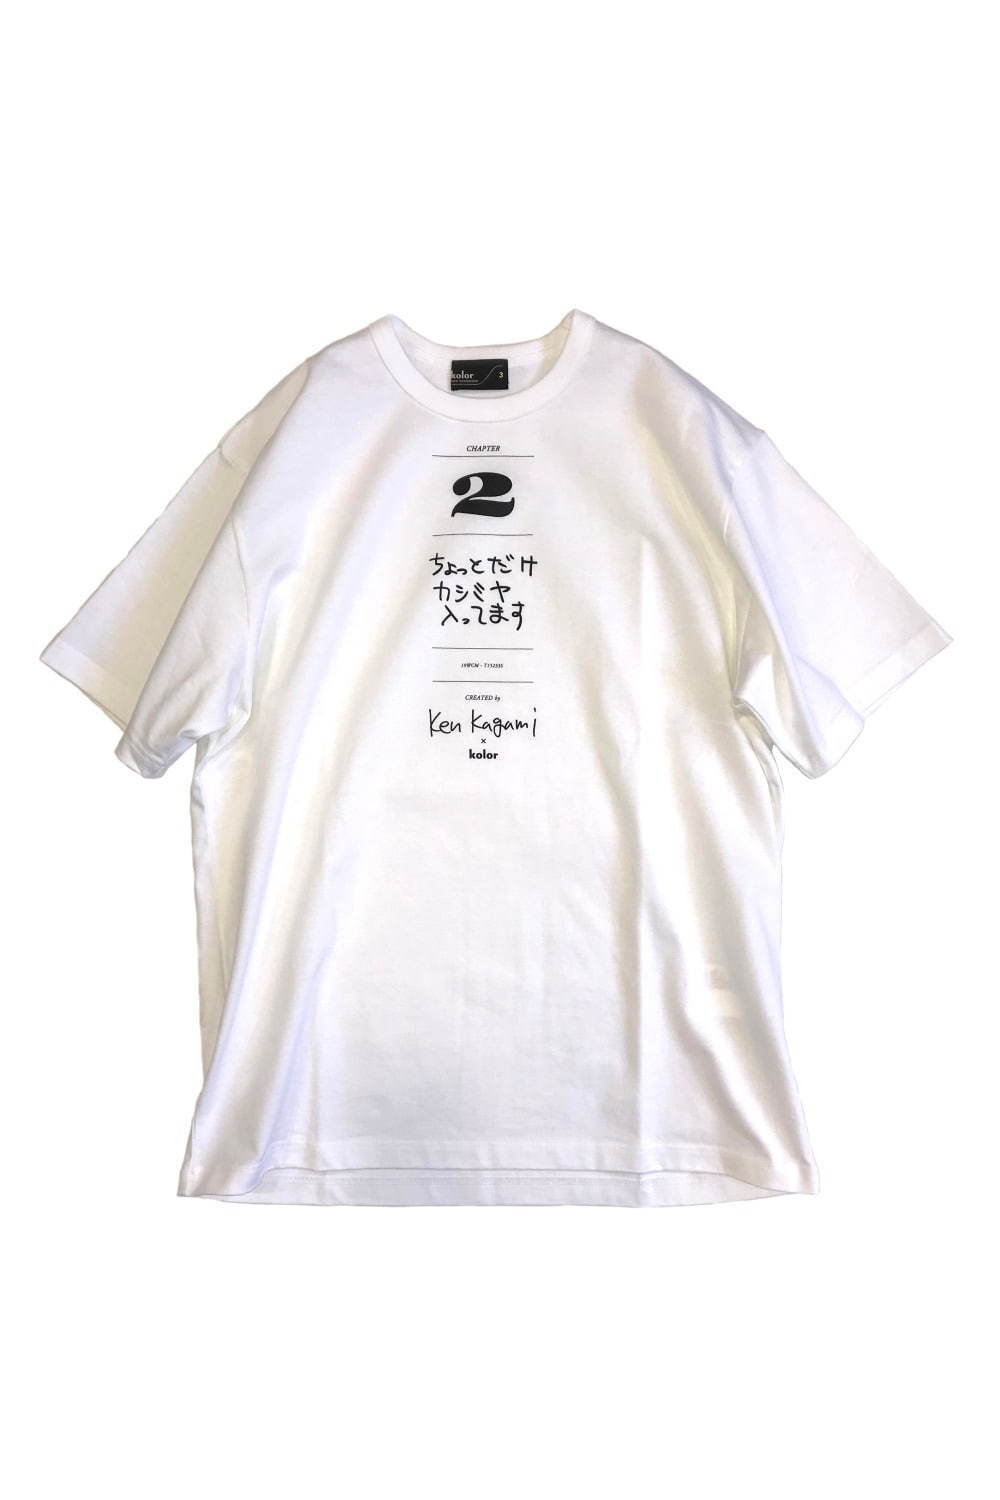 カラー×現代美術作家 加賀美健のコラボTシャツ、ファッション関連の3つのメッセージ入り｜写真5